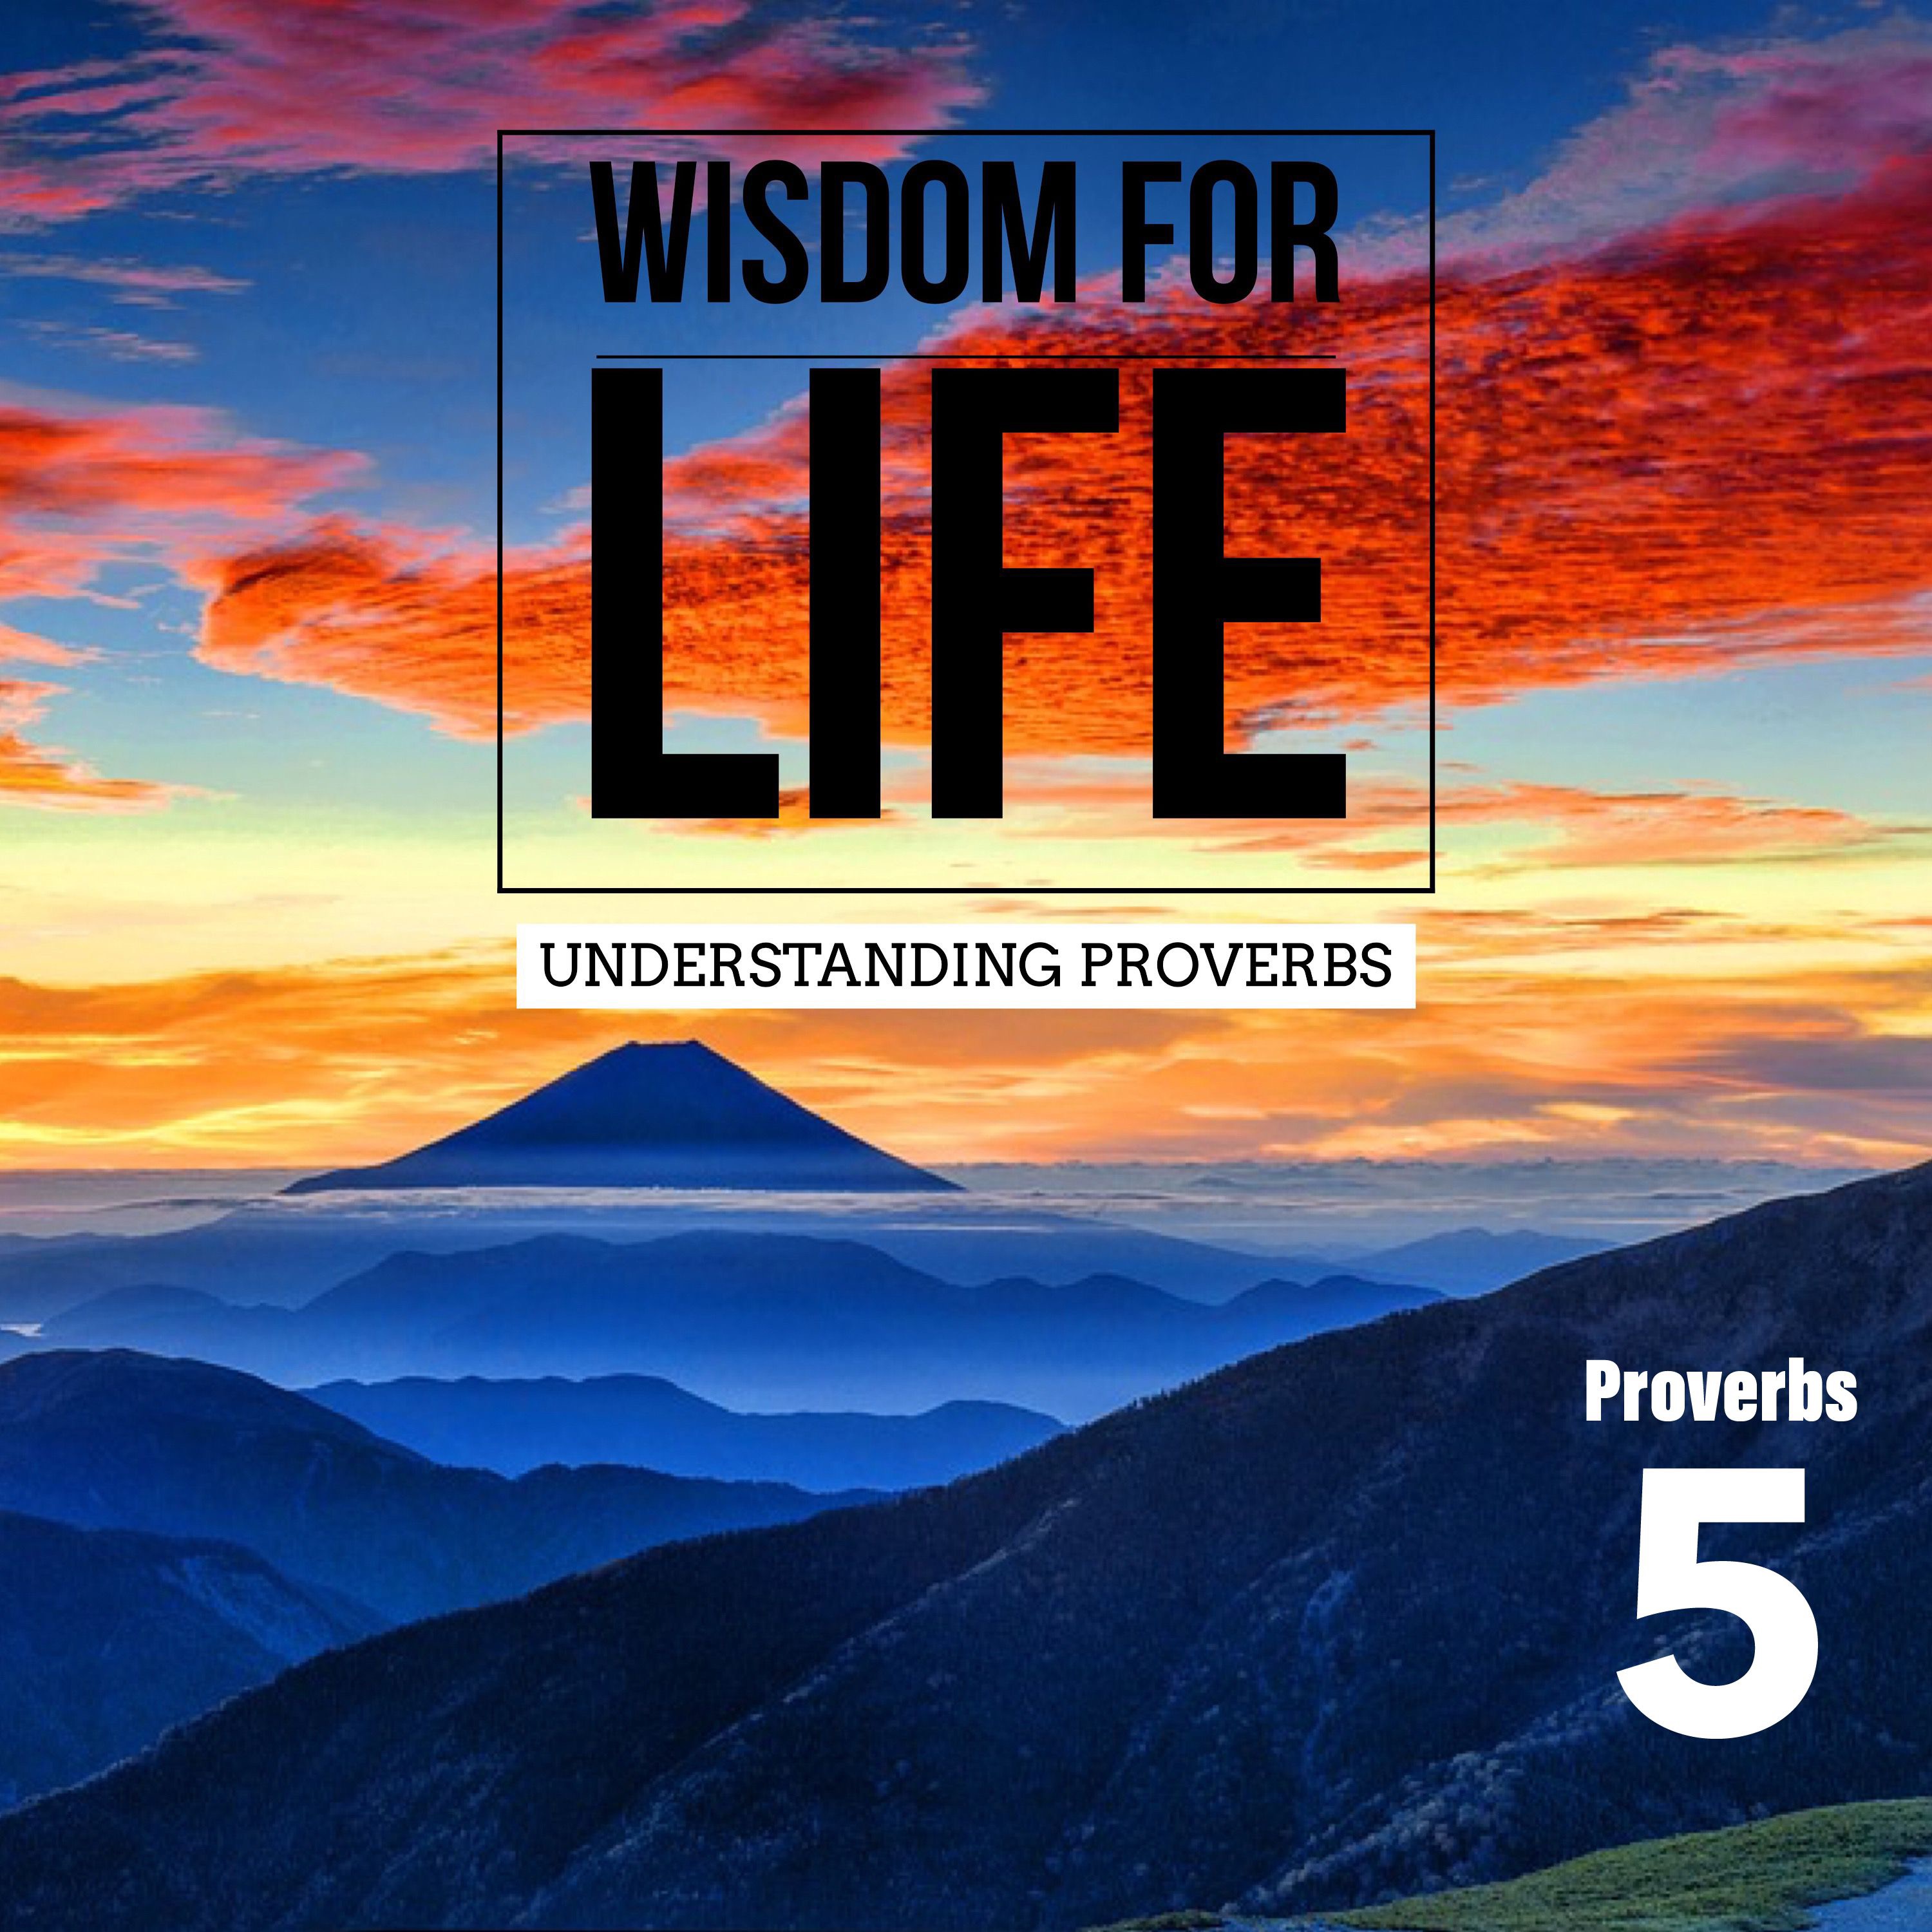 UNDERSTANDING PROVERBS 5